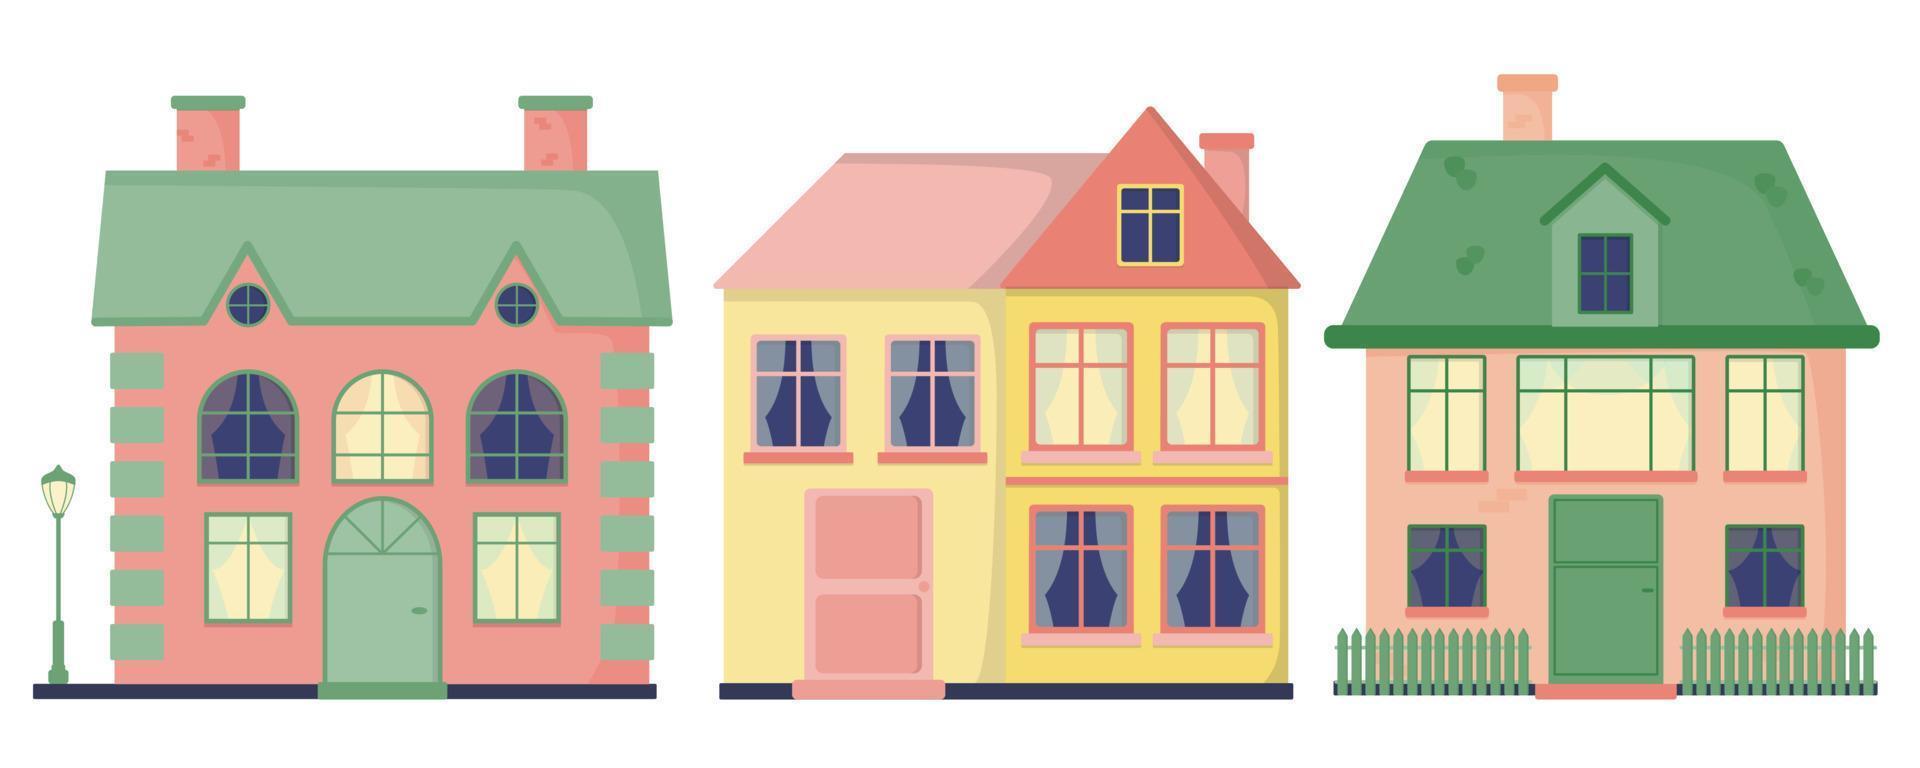 en uppsättning av hus med fönster, kakel, skorstenar. gata lampa. staket. Färg platt vektor illustration isolerat på en vit bakgrund.